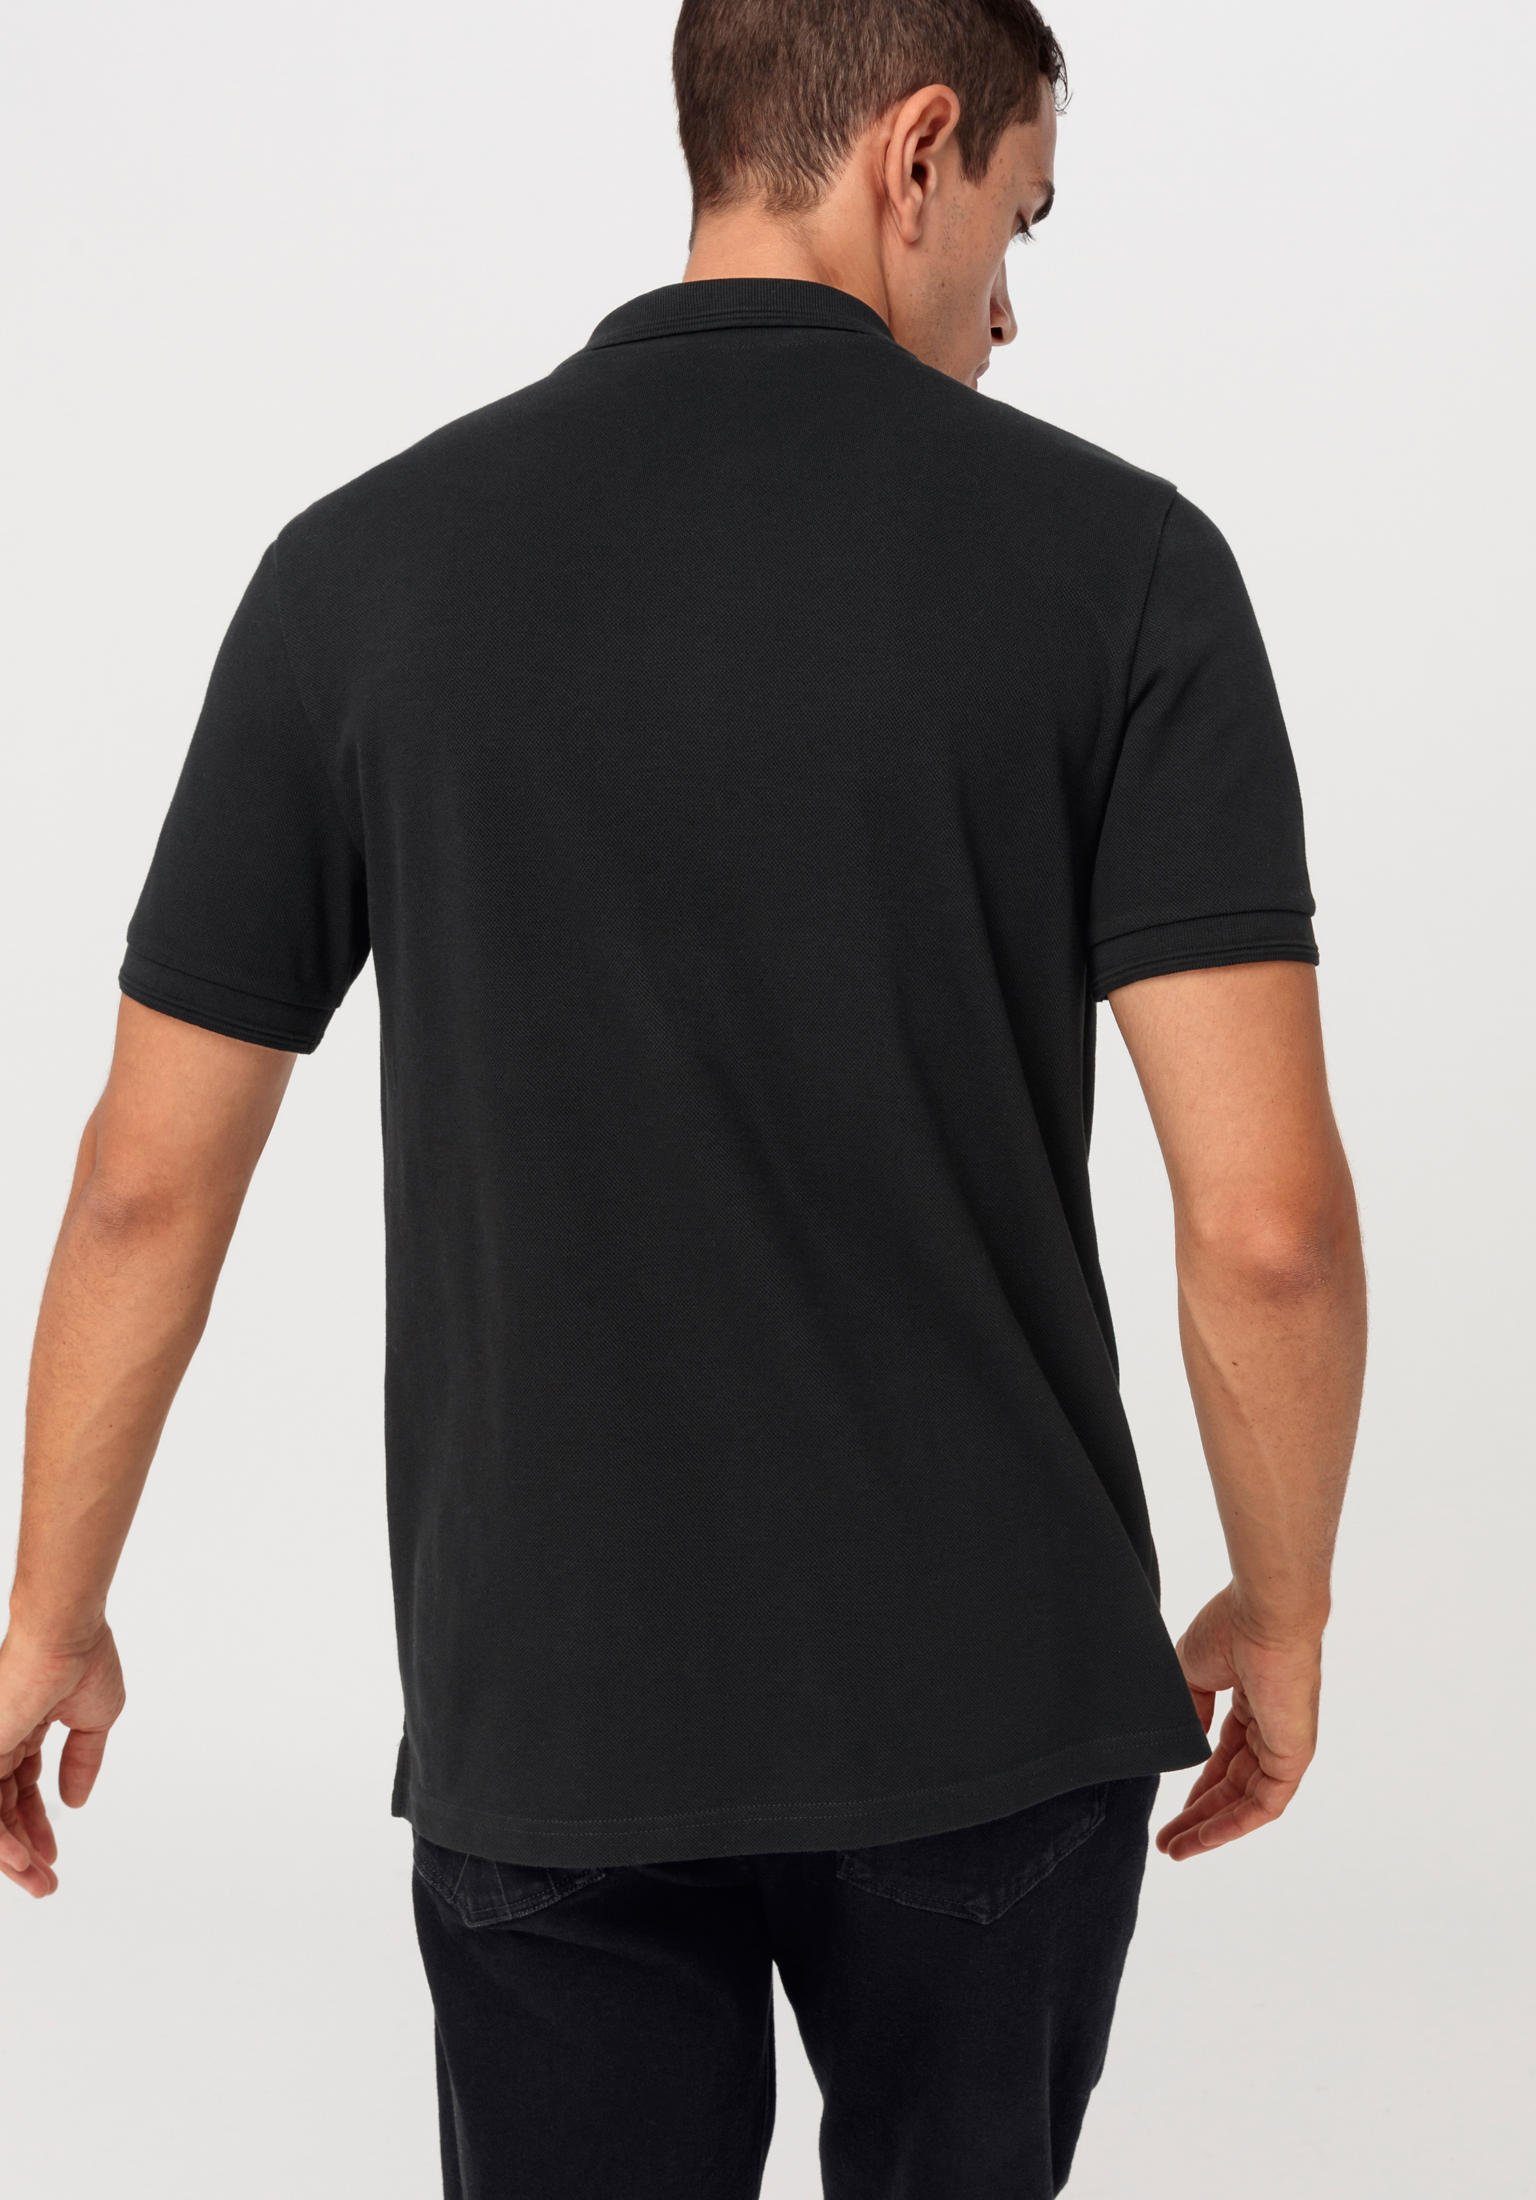 reiner schwarz T-Shirt aus Hessnatur Zwirnjersey Bio-Baumwolle